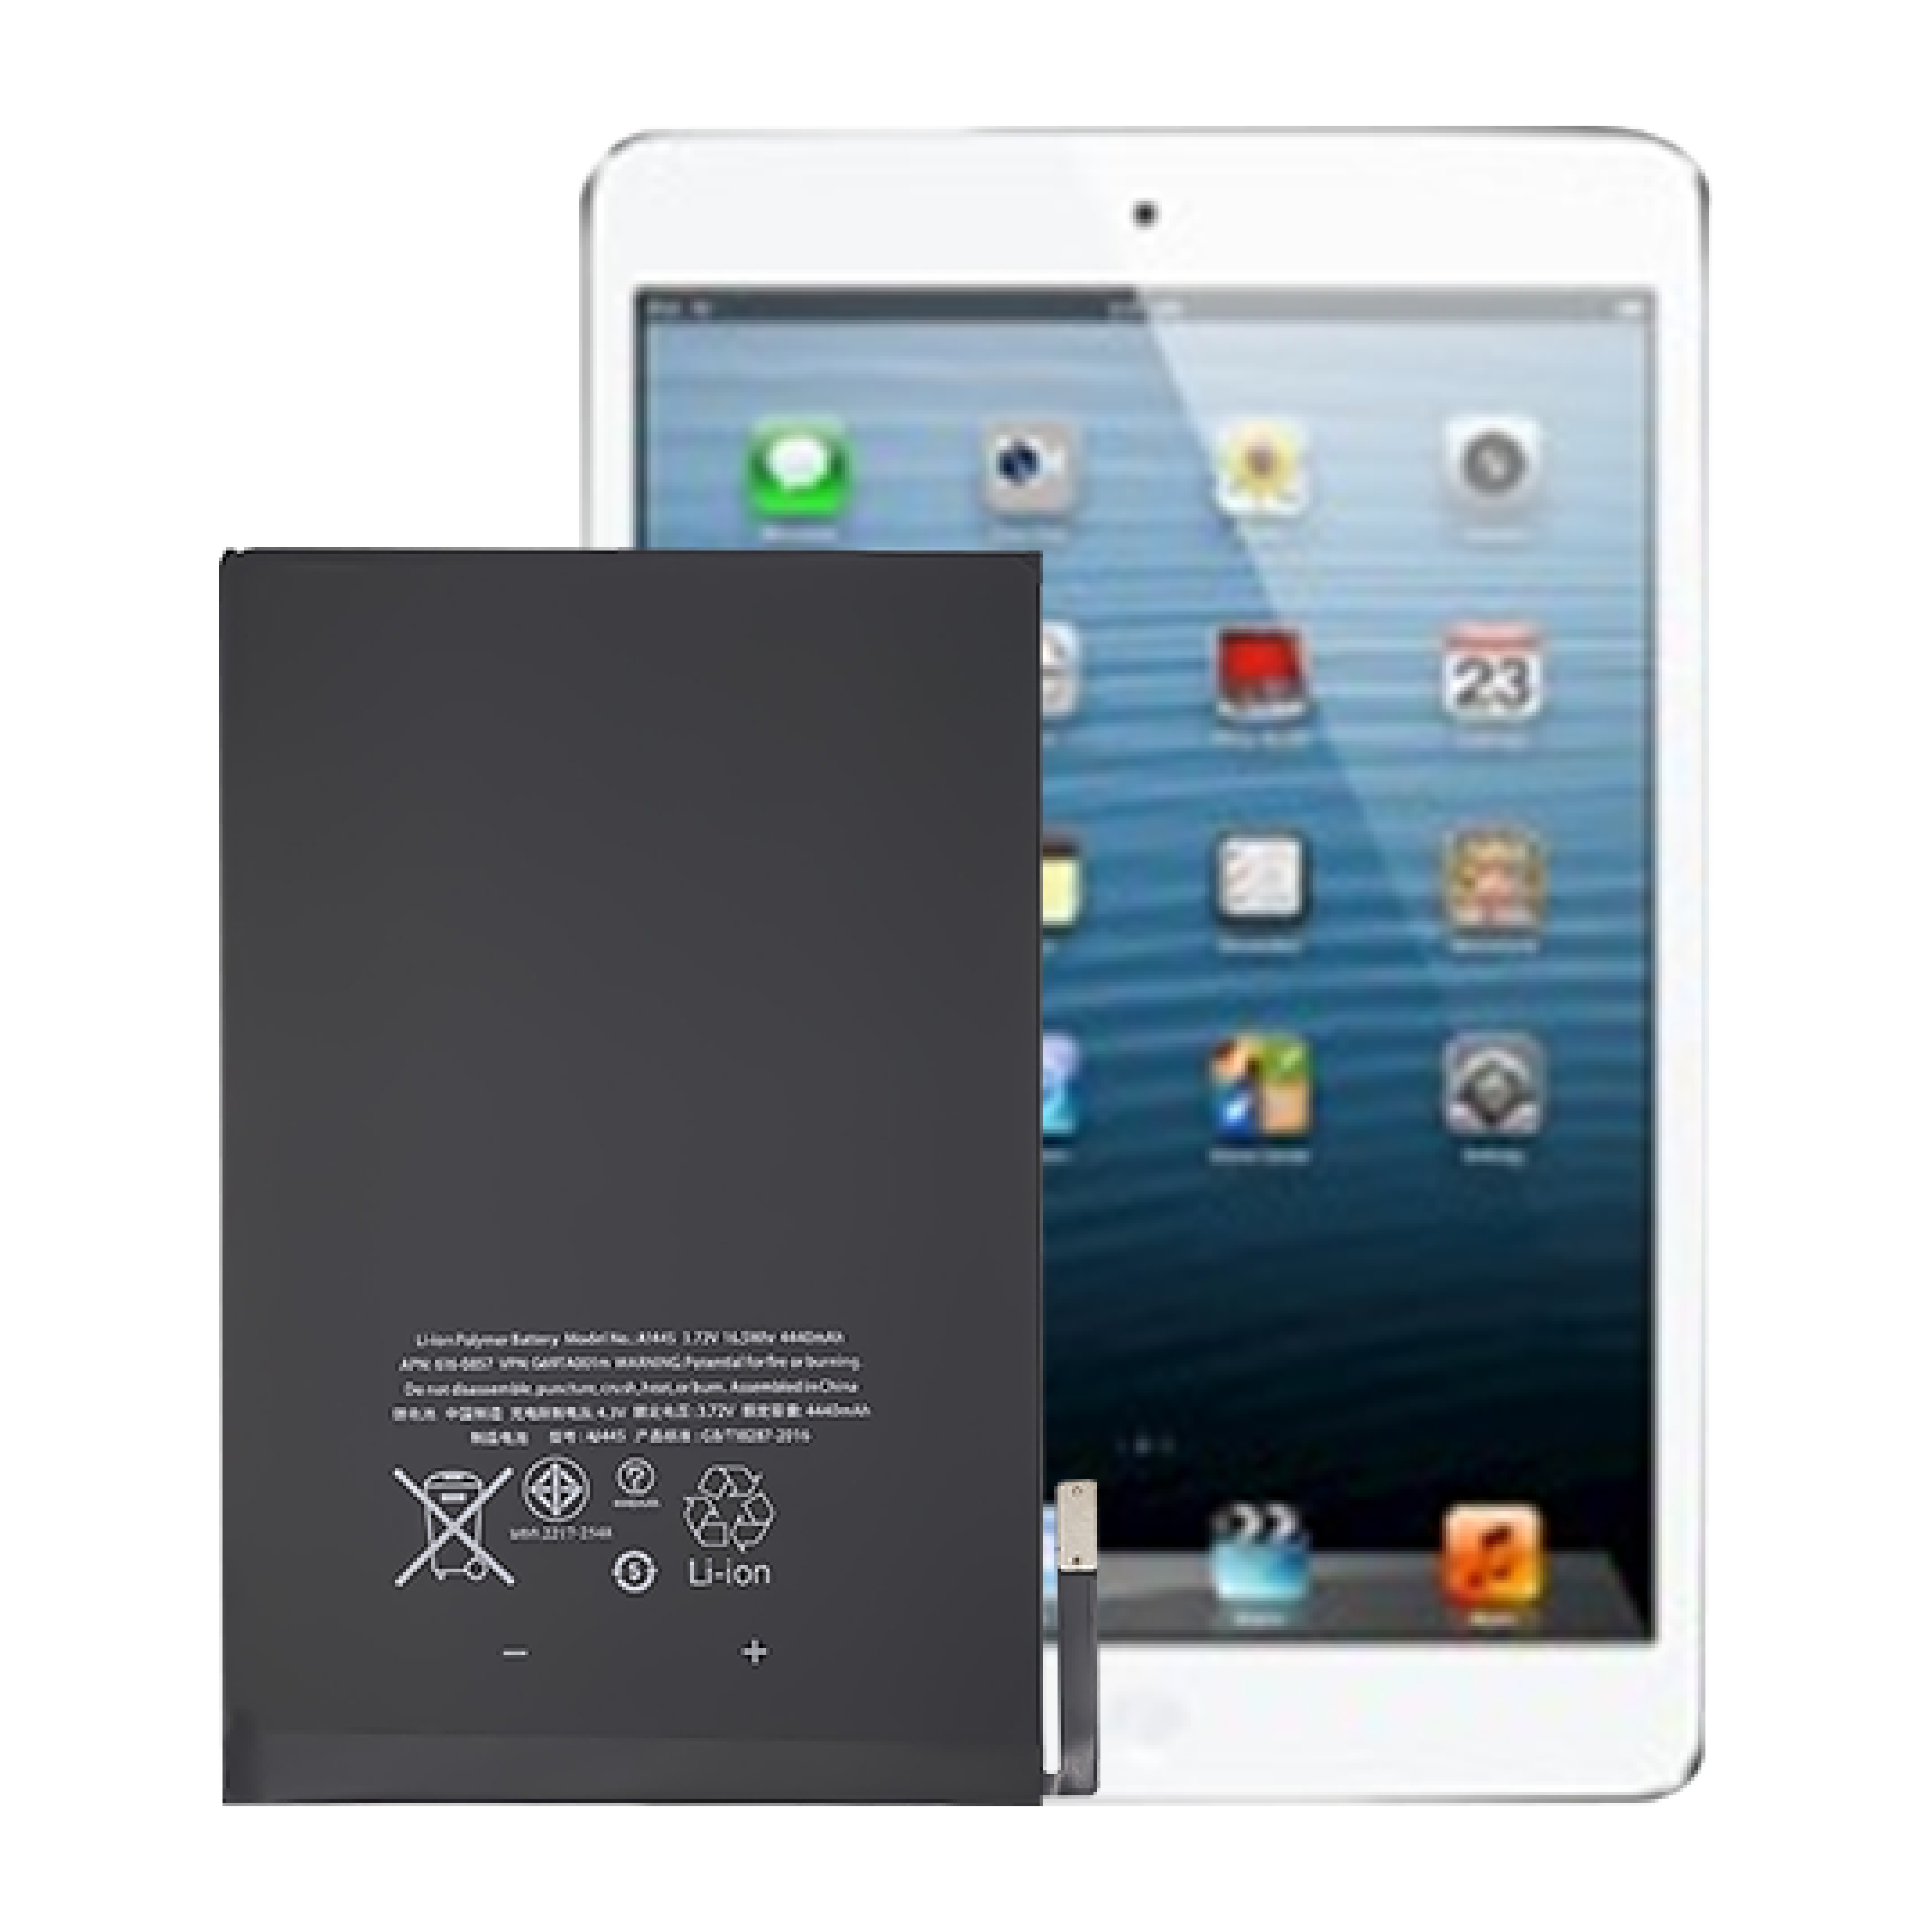 Висока якість OEM Абсолютно нова внутрішня батарея планшета з 0 циклами для батареї Apple iPad mini1